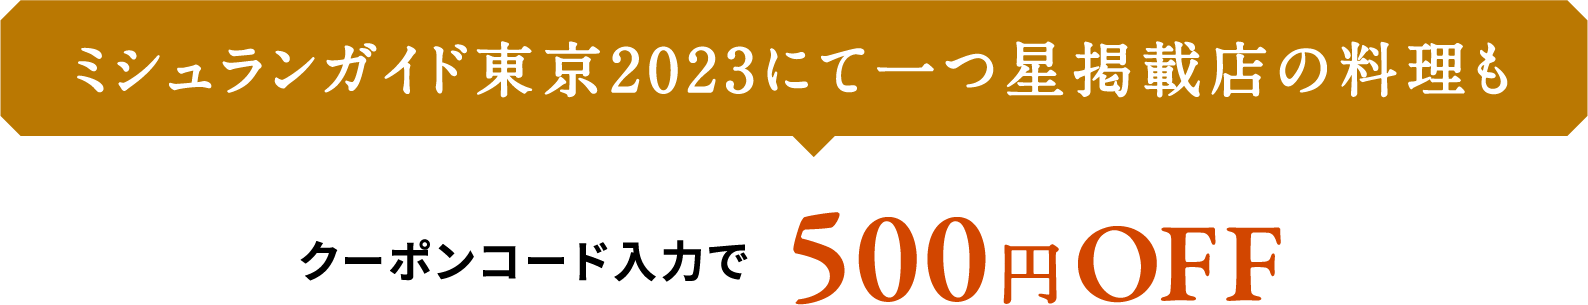 ミシュランガイド東京2023にて一つ星掲載店の料理も含むセットがクーポンコード入力で500円OFF